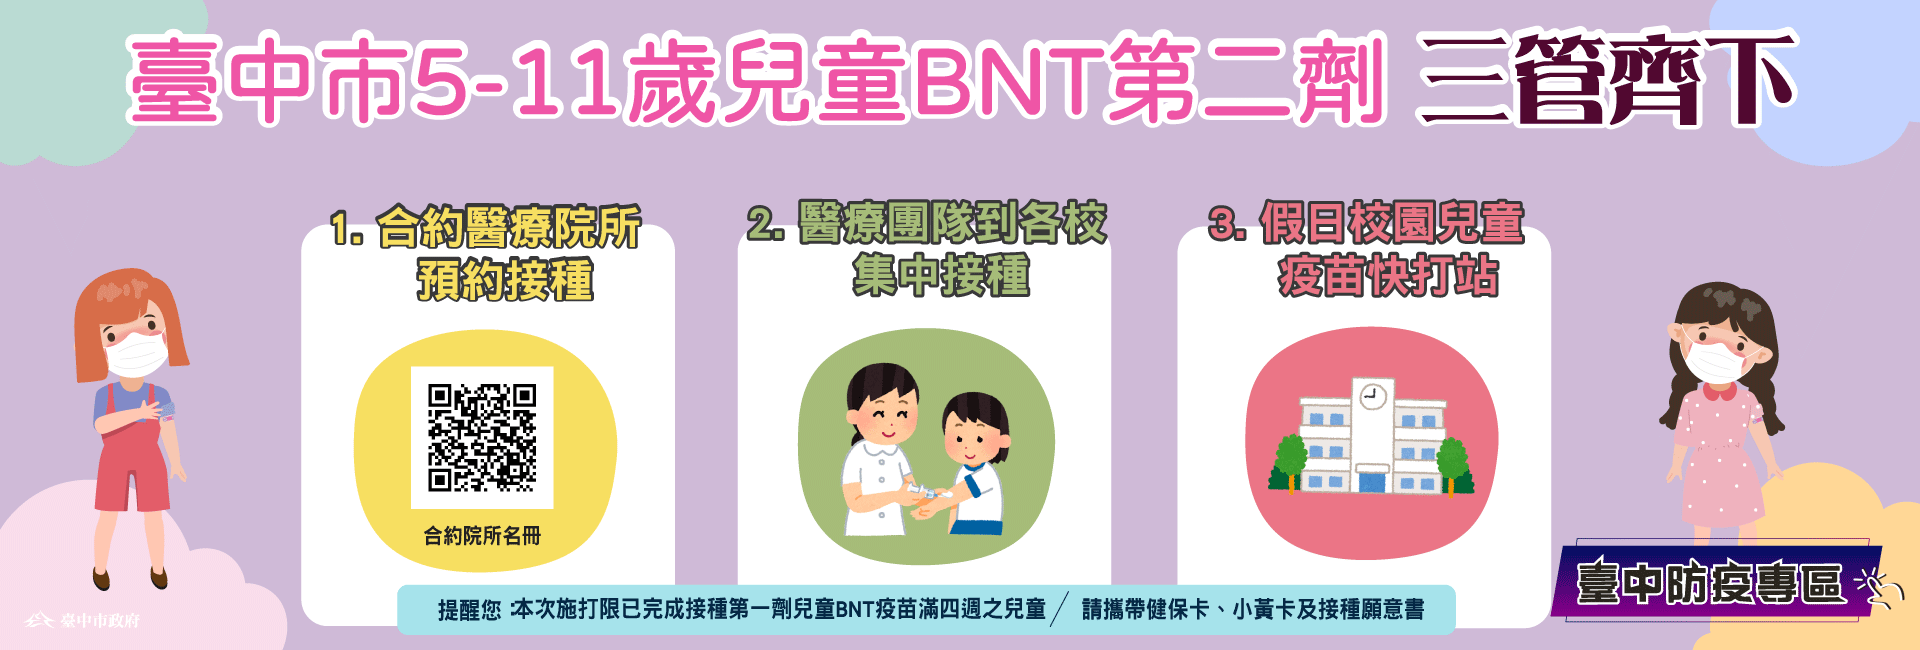 5-11歲兒童第二劑BNT接種